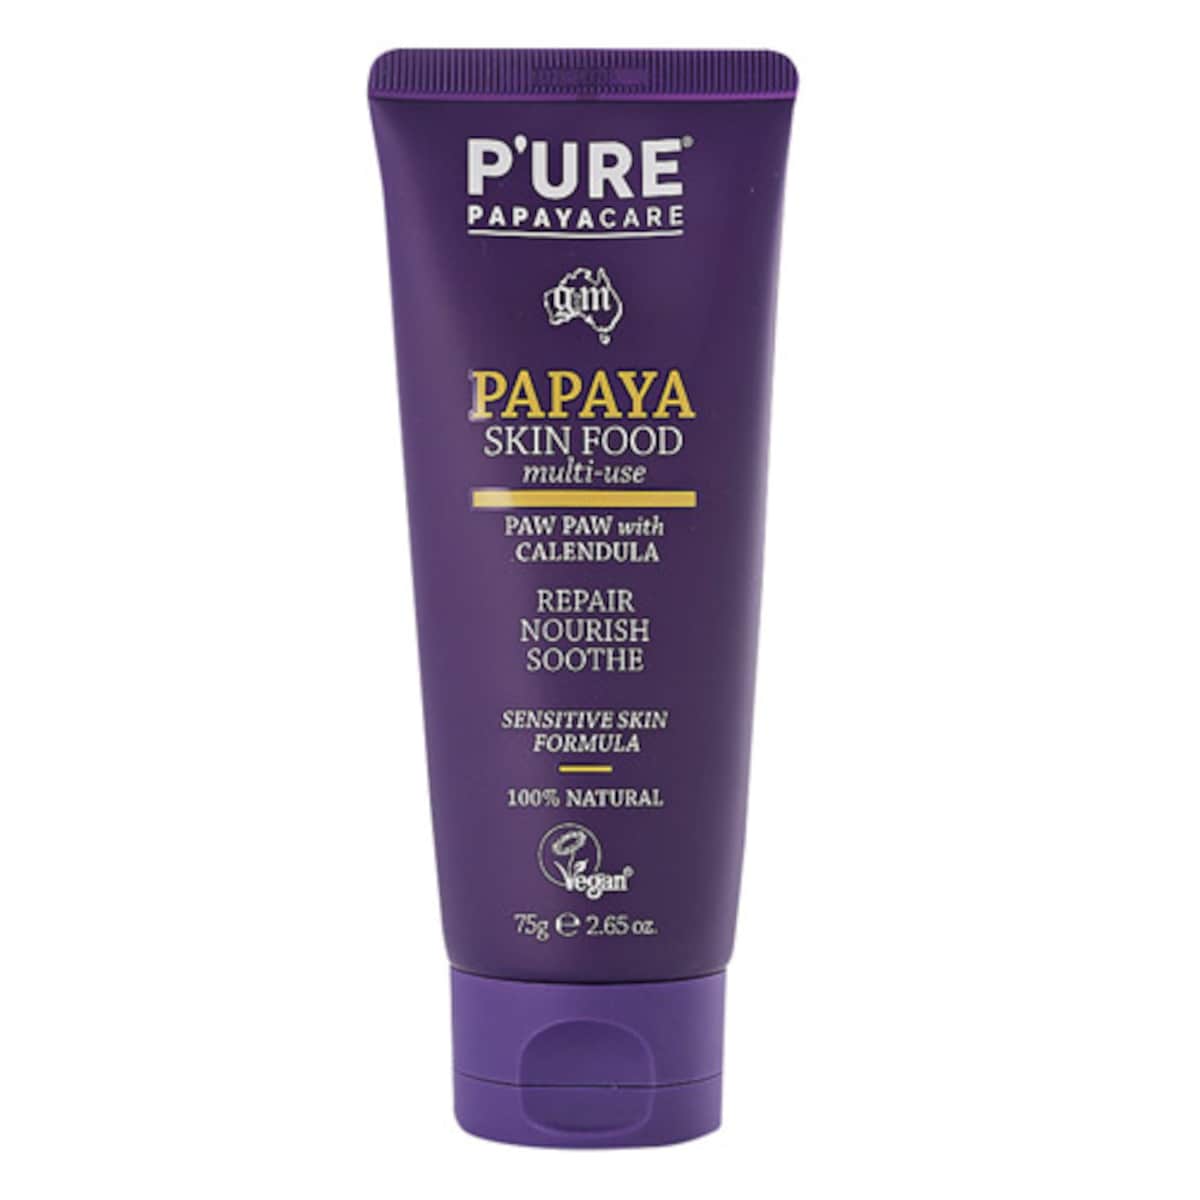 P'Ure Papayacare Papaya Skin Food Multi-Use 75G